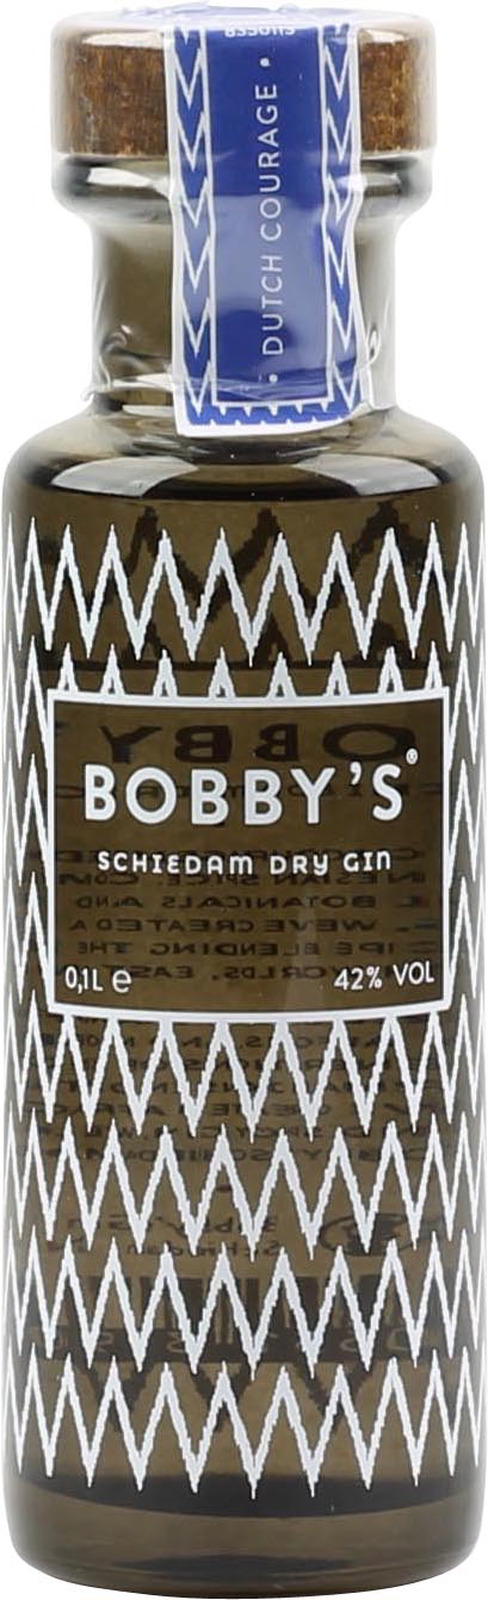 Probieren 0,1 Bobbys zum Vol., Gin 42 Mini % Liter